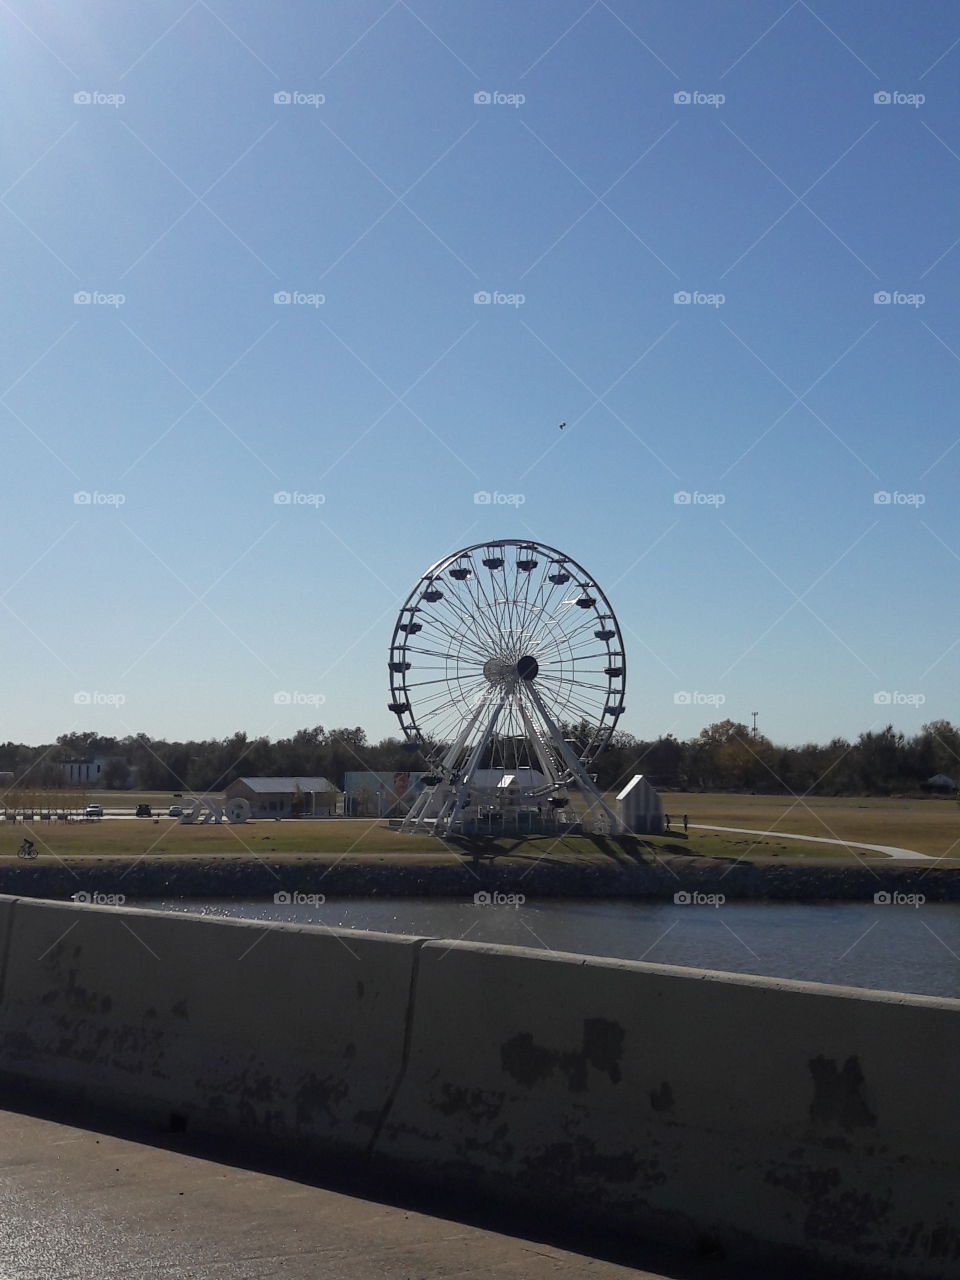 Wheeler's Ferris Wheel